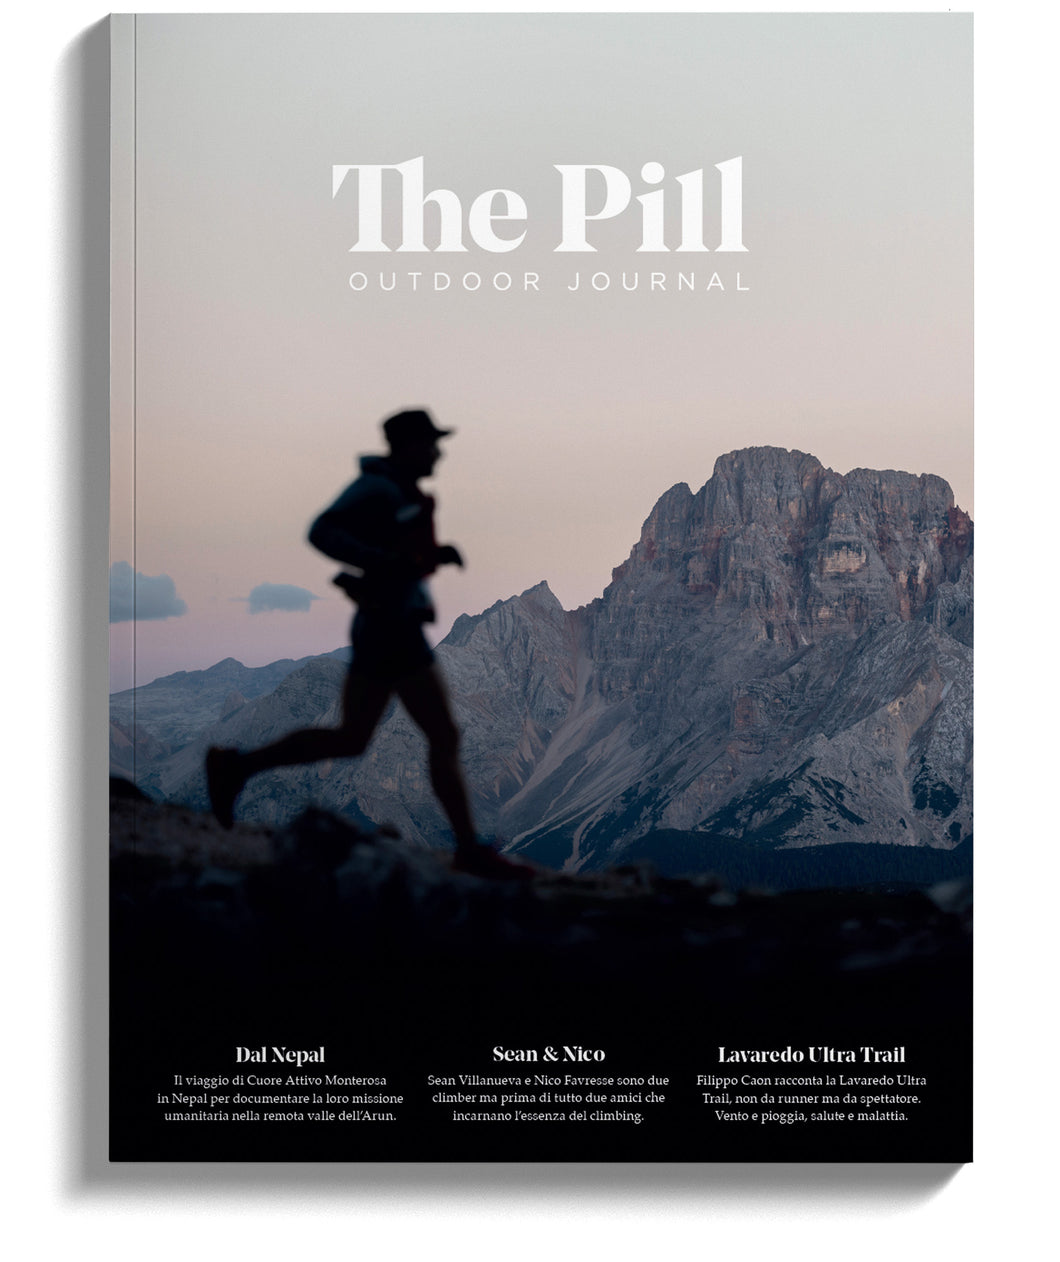 The Pill Outdoor Journal 55